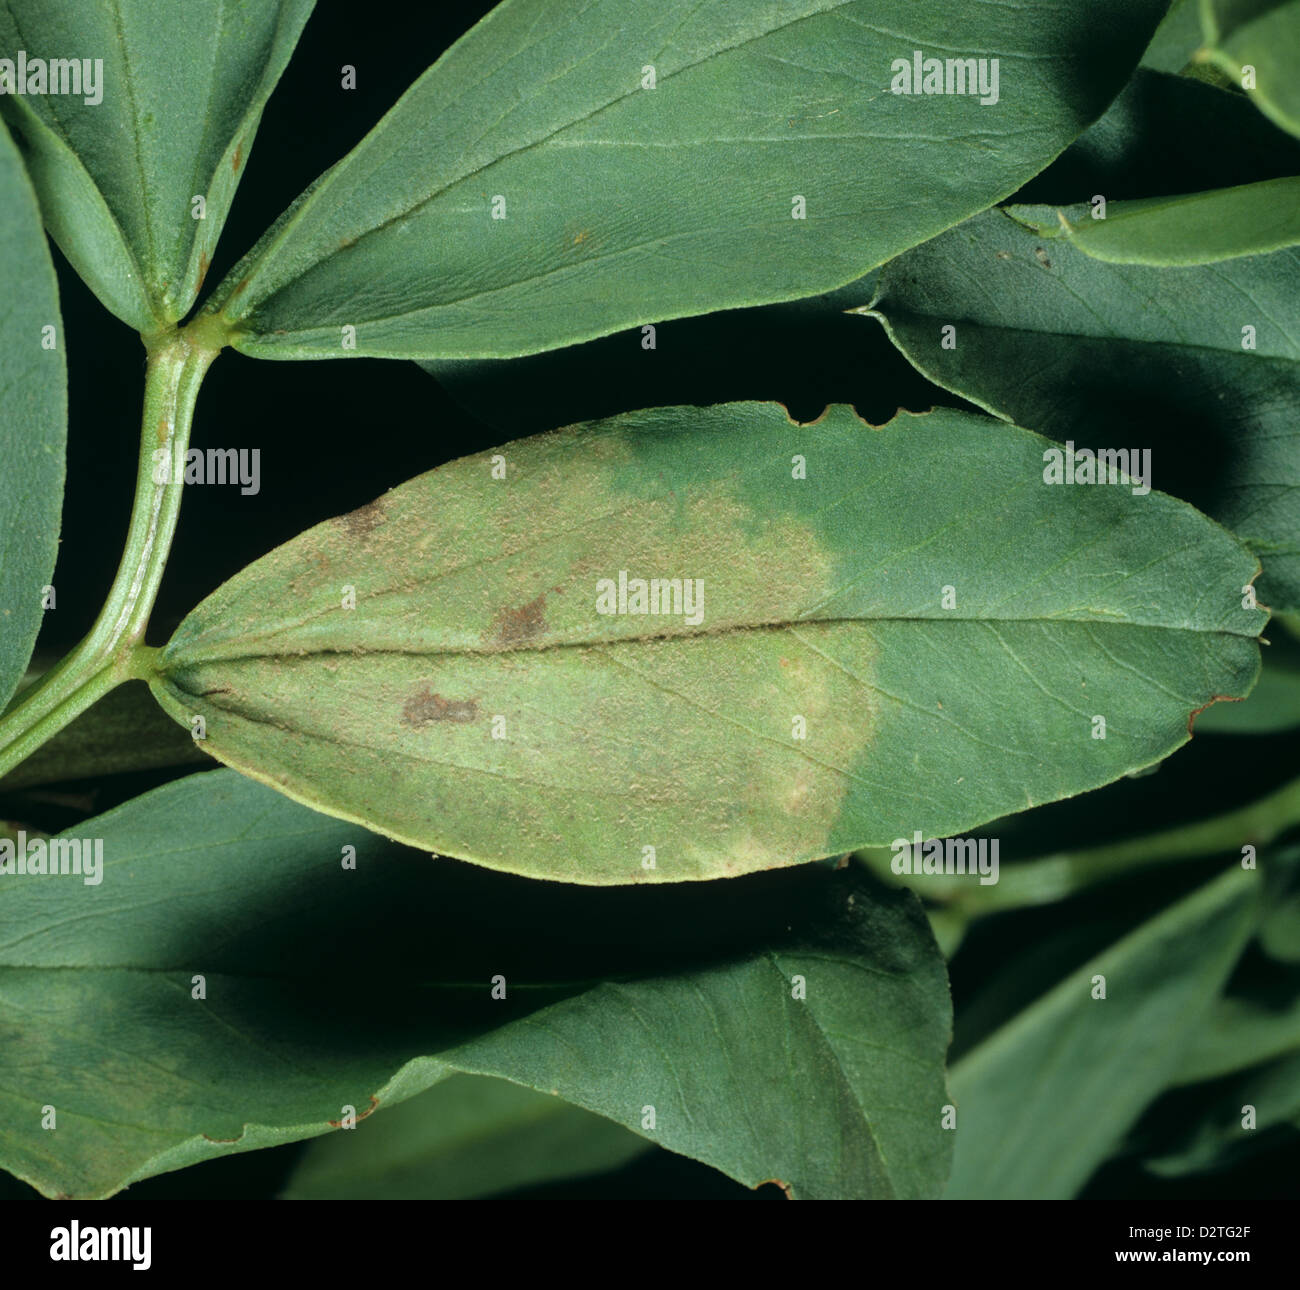 El mildiú lanoso, Peronospora viciae, lesión temprana en la superficie superior de un campo o habas leaf Foto de stock